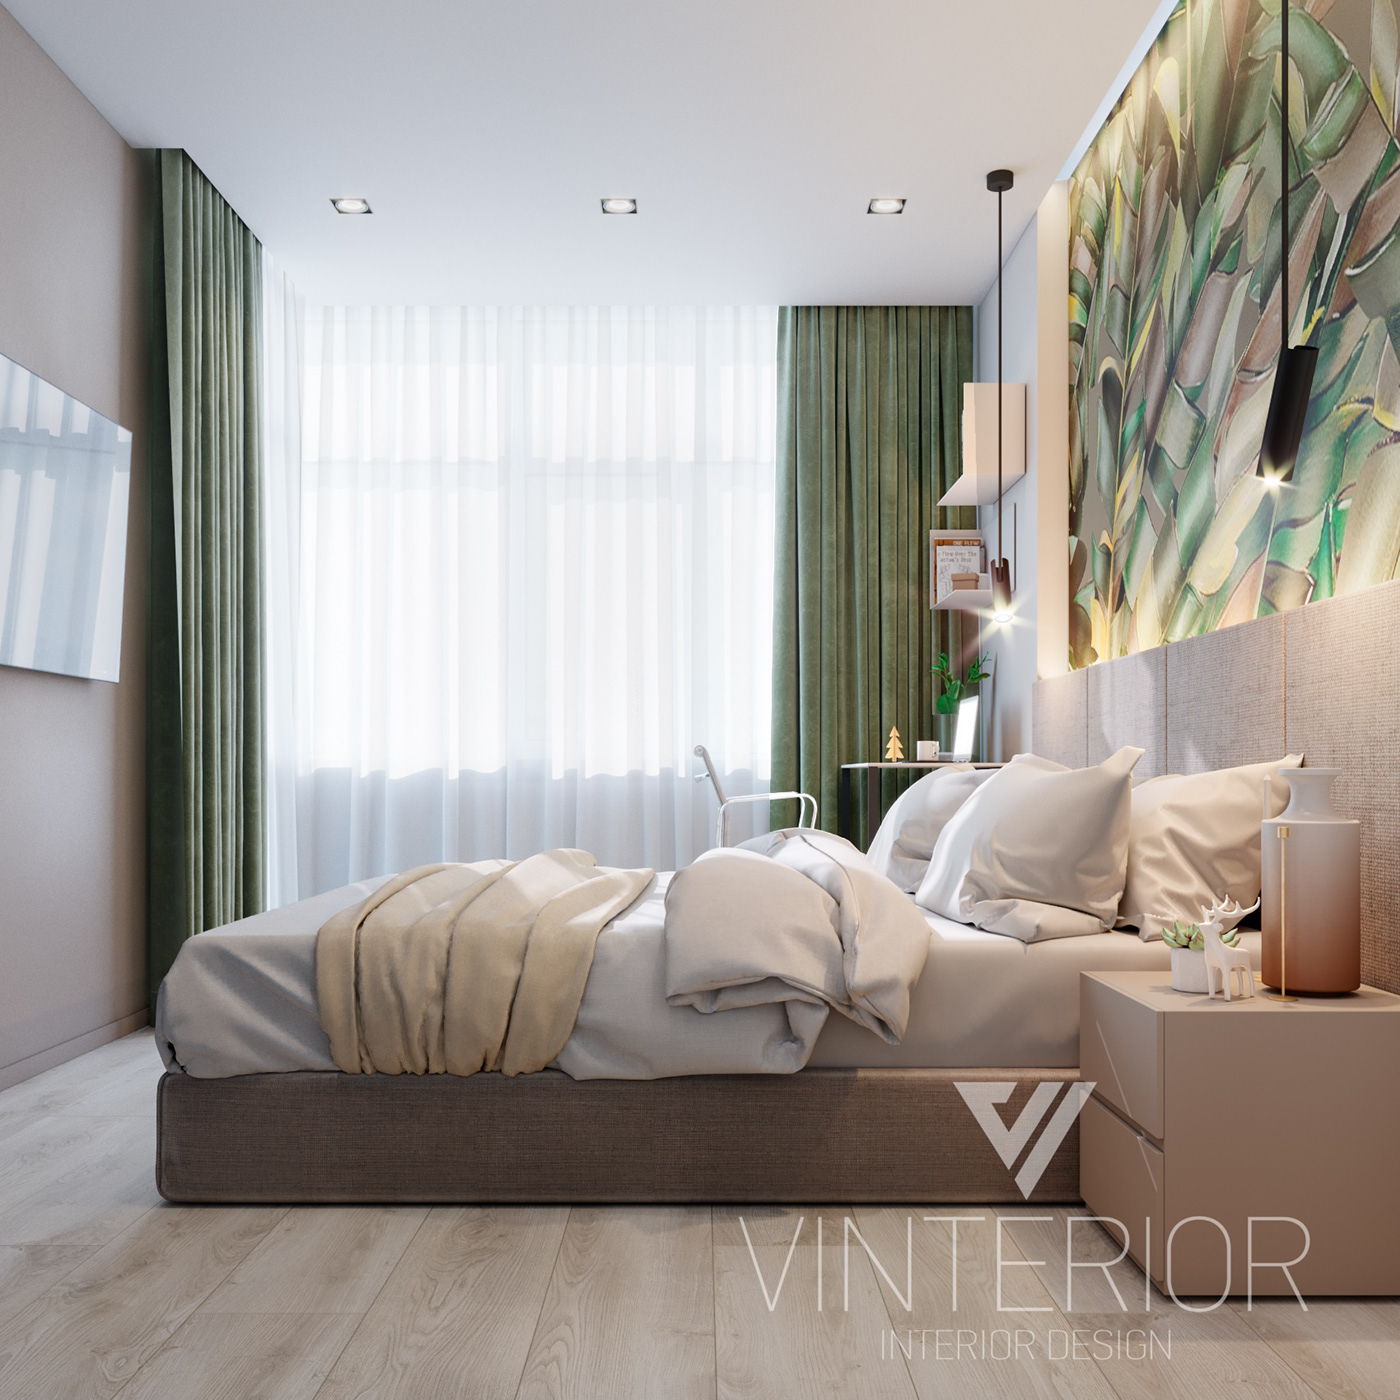 #vinterior #DesignInterior #interiordesign #yourdesign #moderndesign #flat #InteriorProject